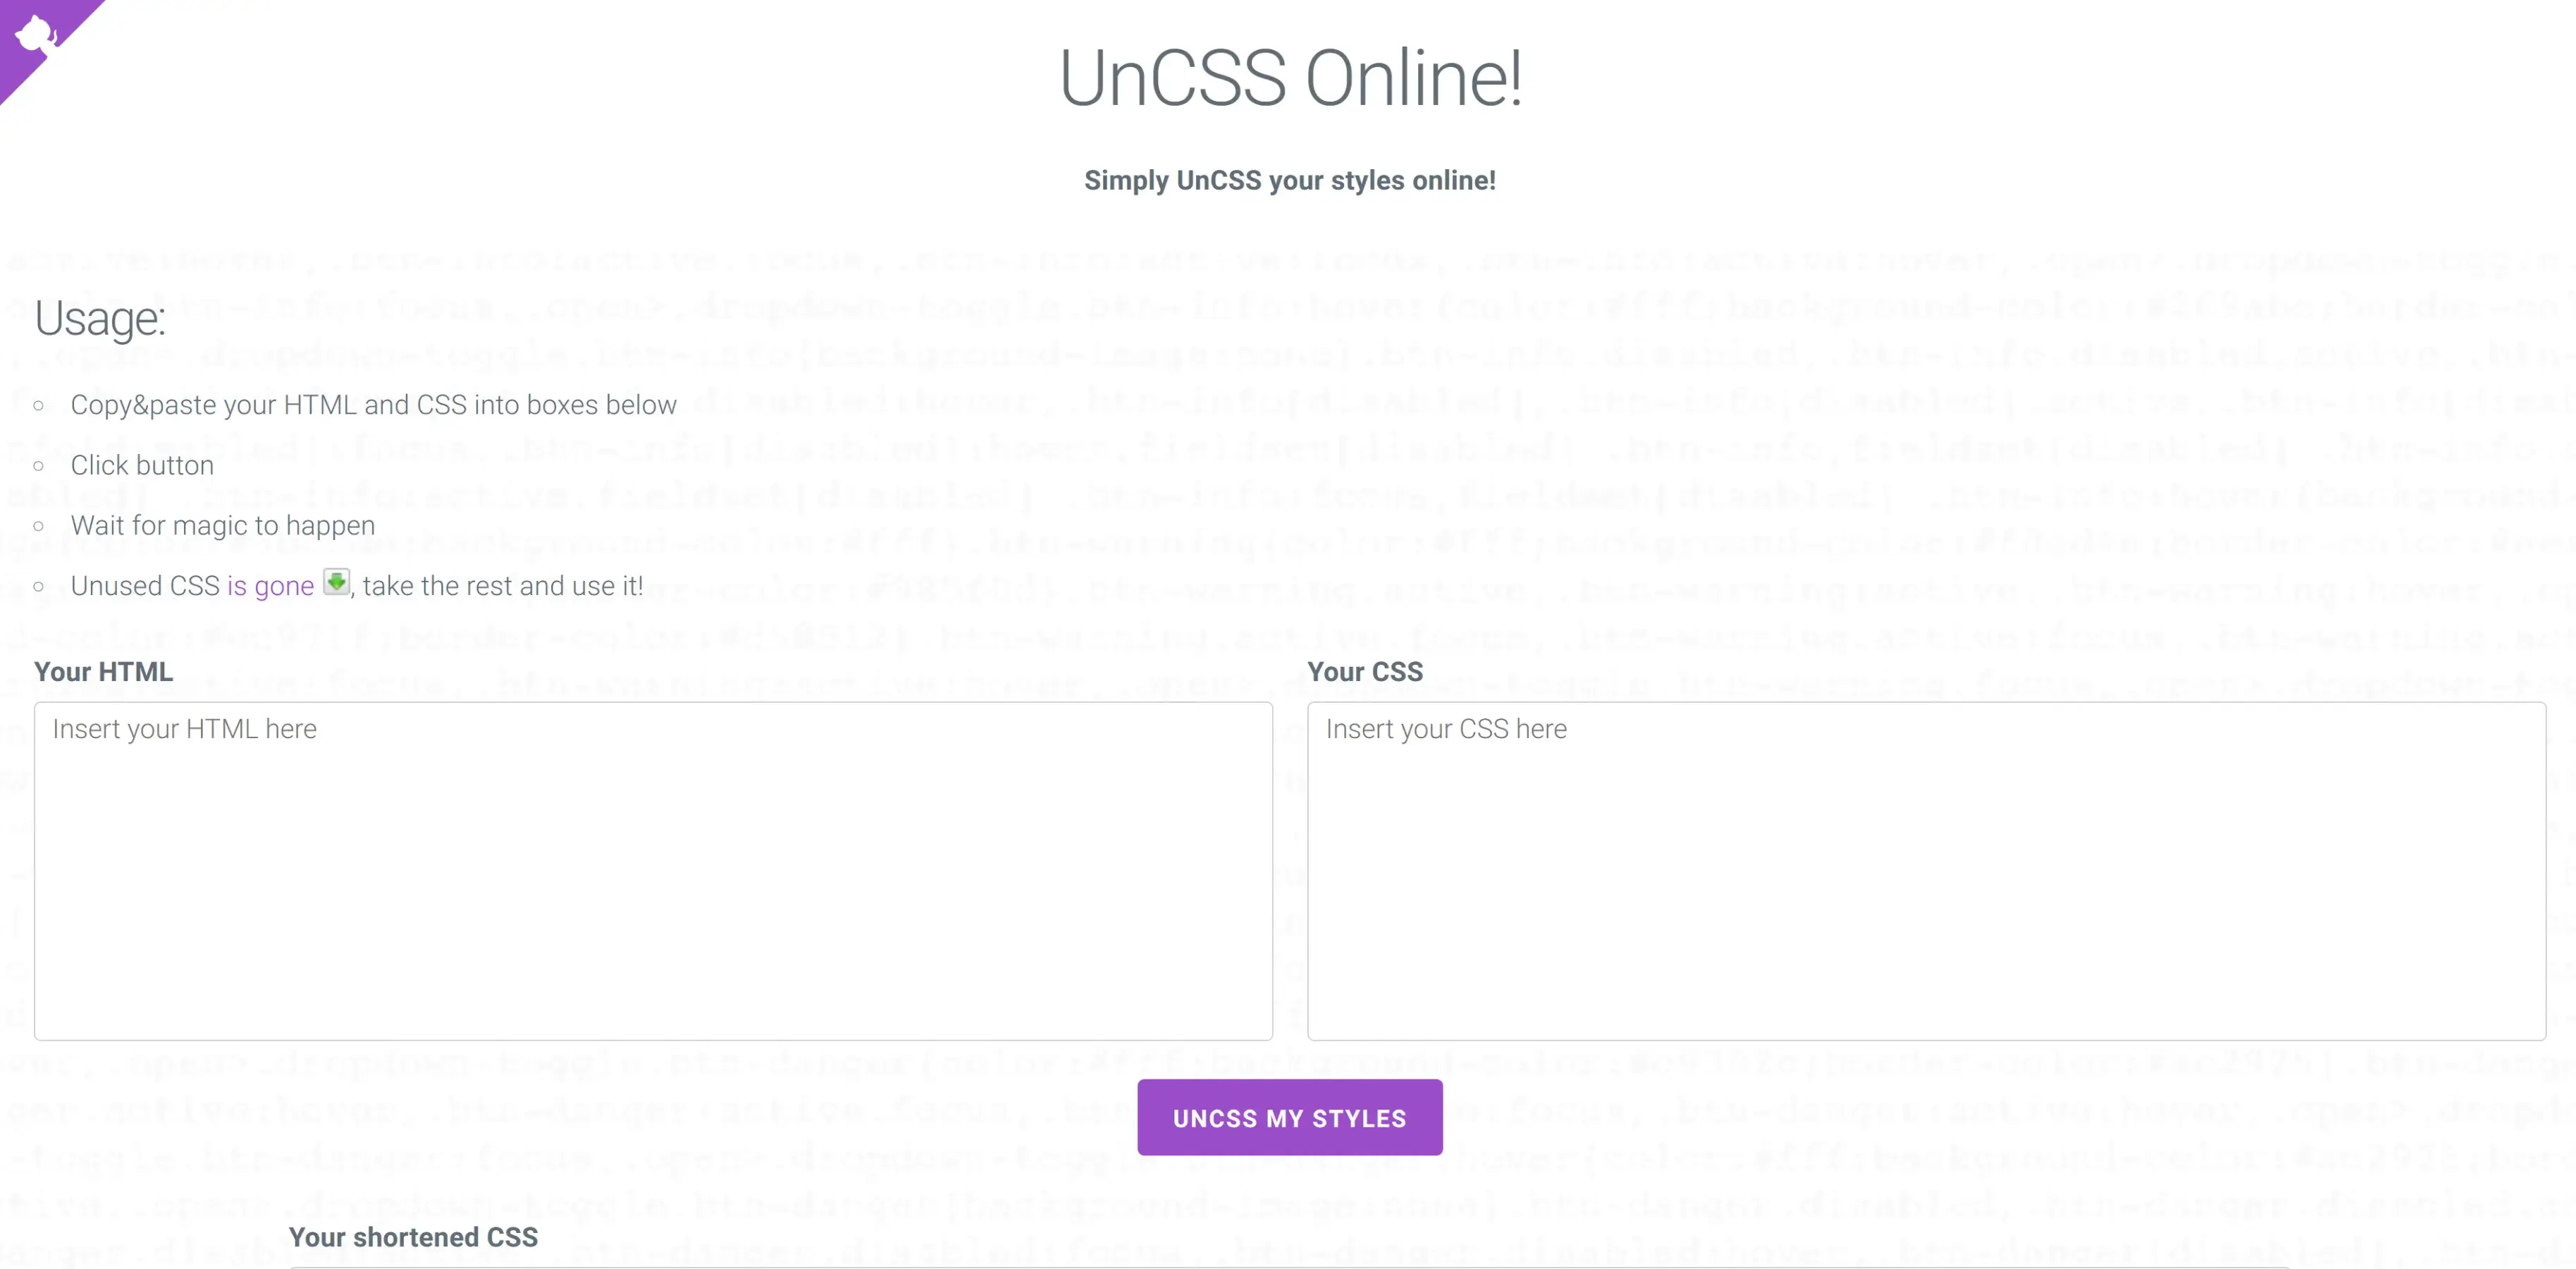 UnCSS Online!